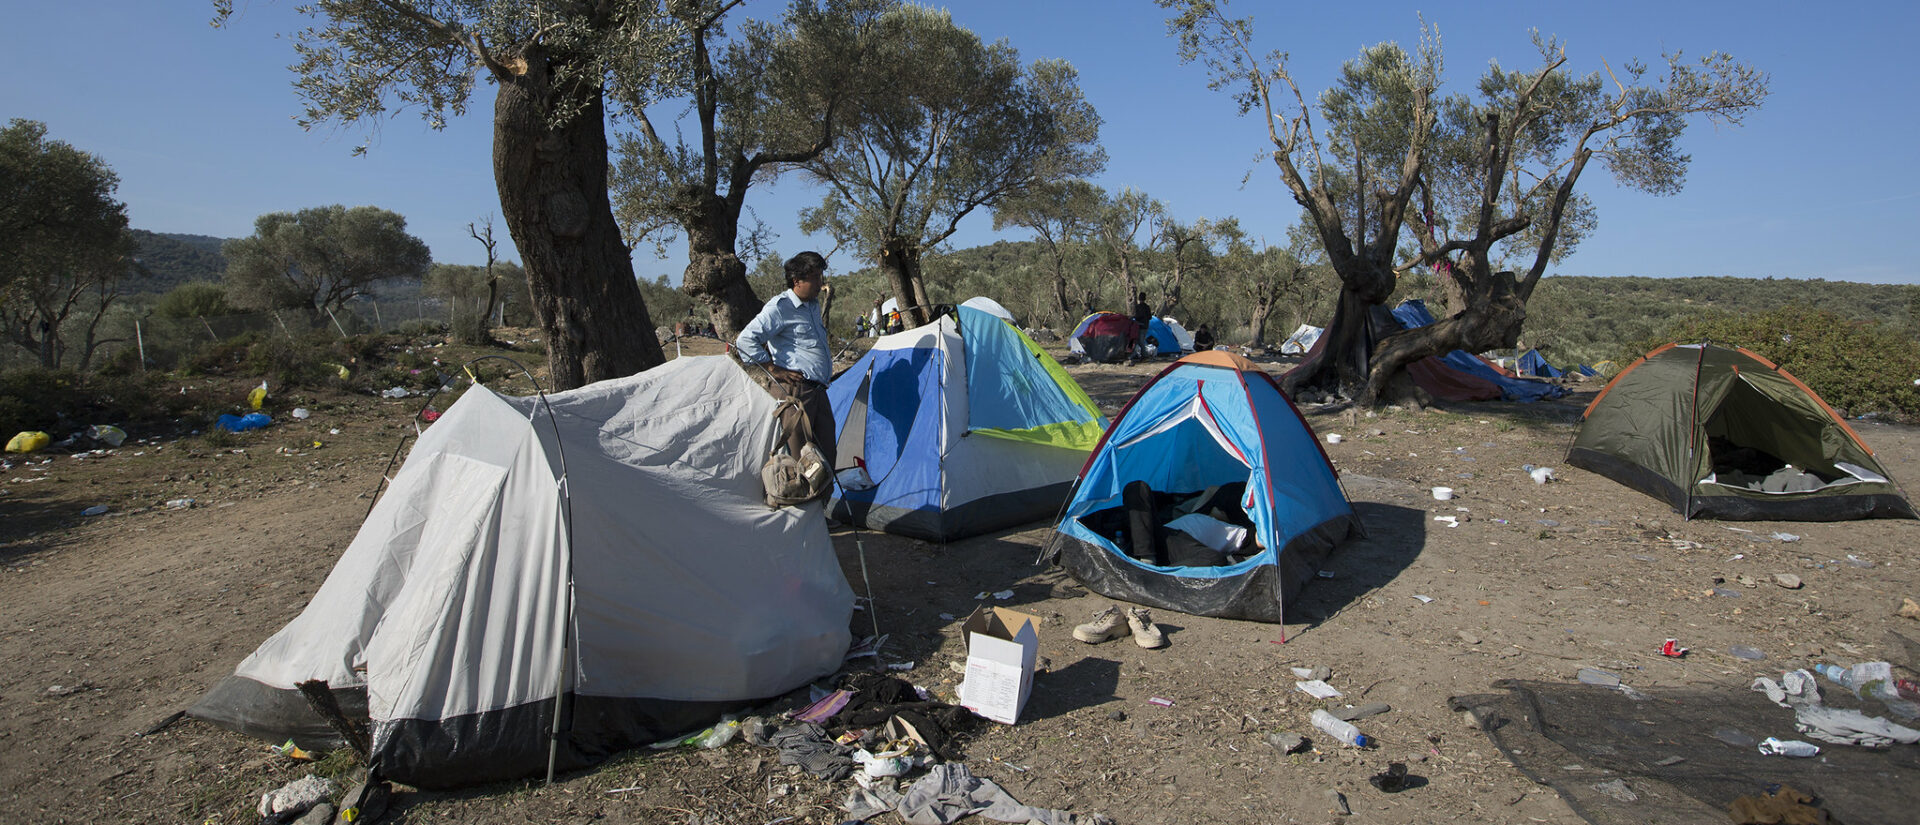 Les conditions de vie sont insalubres dans le camp de réfugiés de Lesbos | © Steve Evans/Flickr/CC BY-NC 2.0